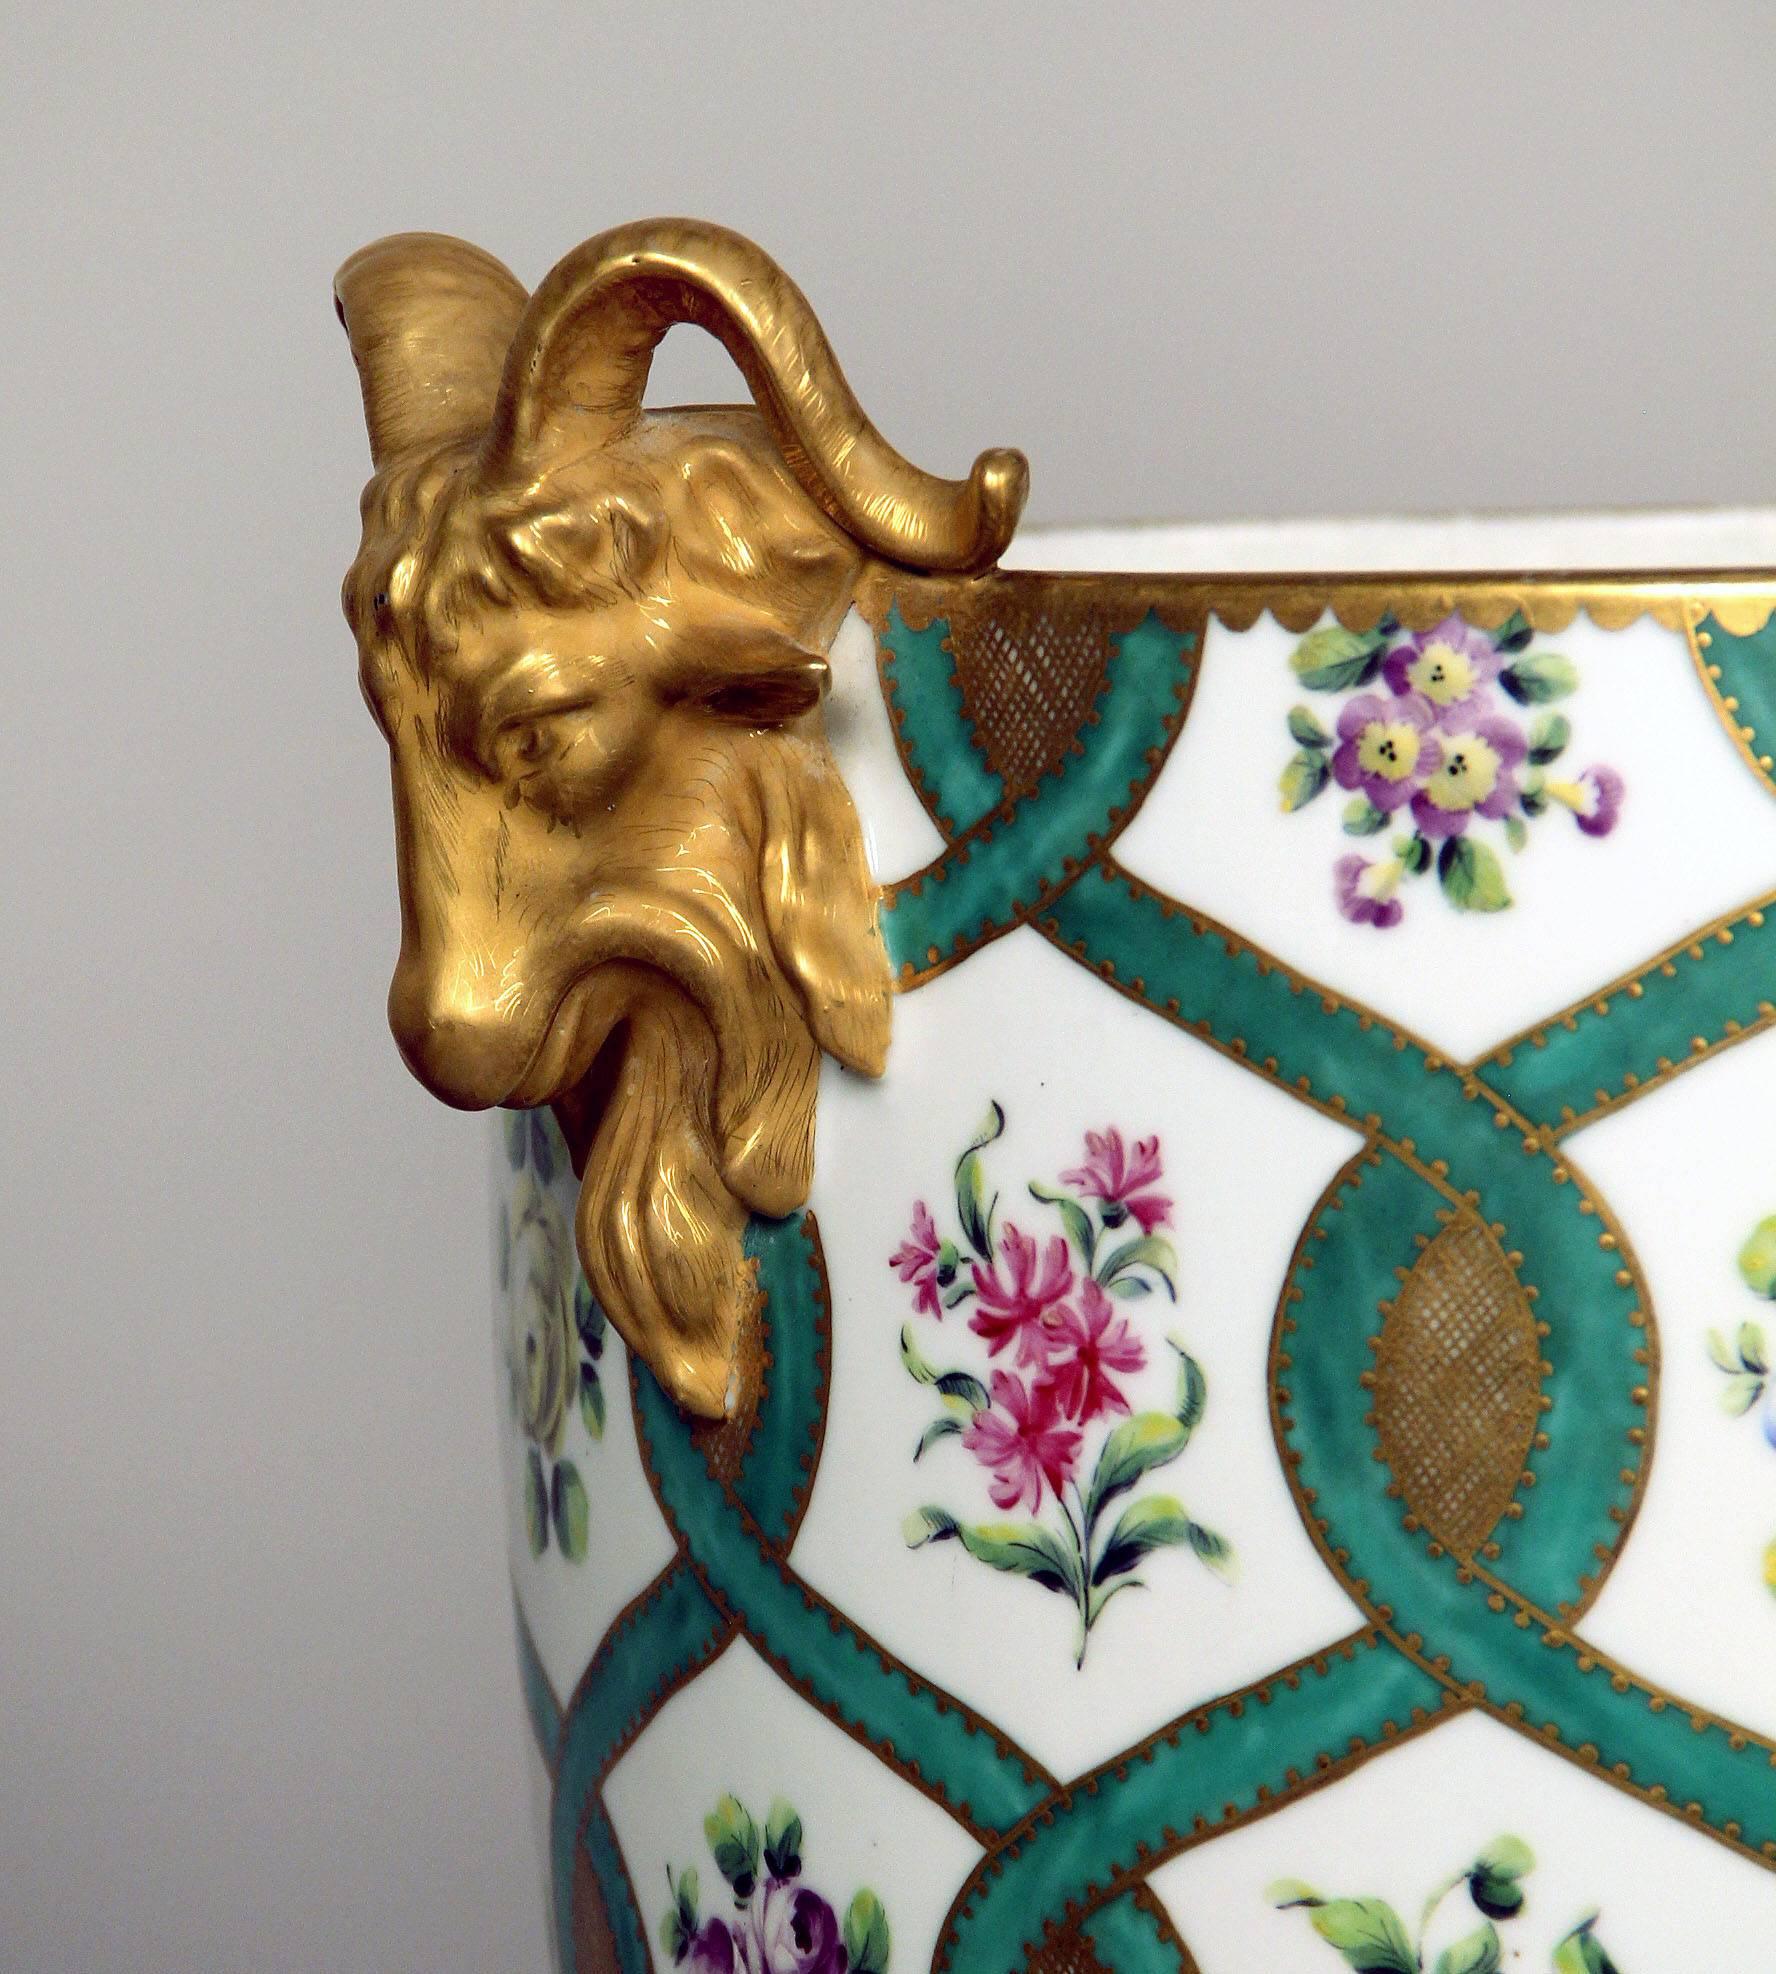 Jardinière en porcelaine de la fin du XIXe siècle, de style Sèvres, à parquets dorés

Finement peint de nombreuses fleurs colorées avec des garnitures vertes et dorées, des têtes de bélier dorées de chaque côté.

Fin 1739-début 1740, la